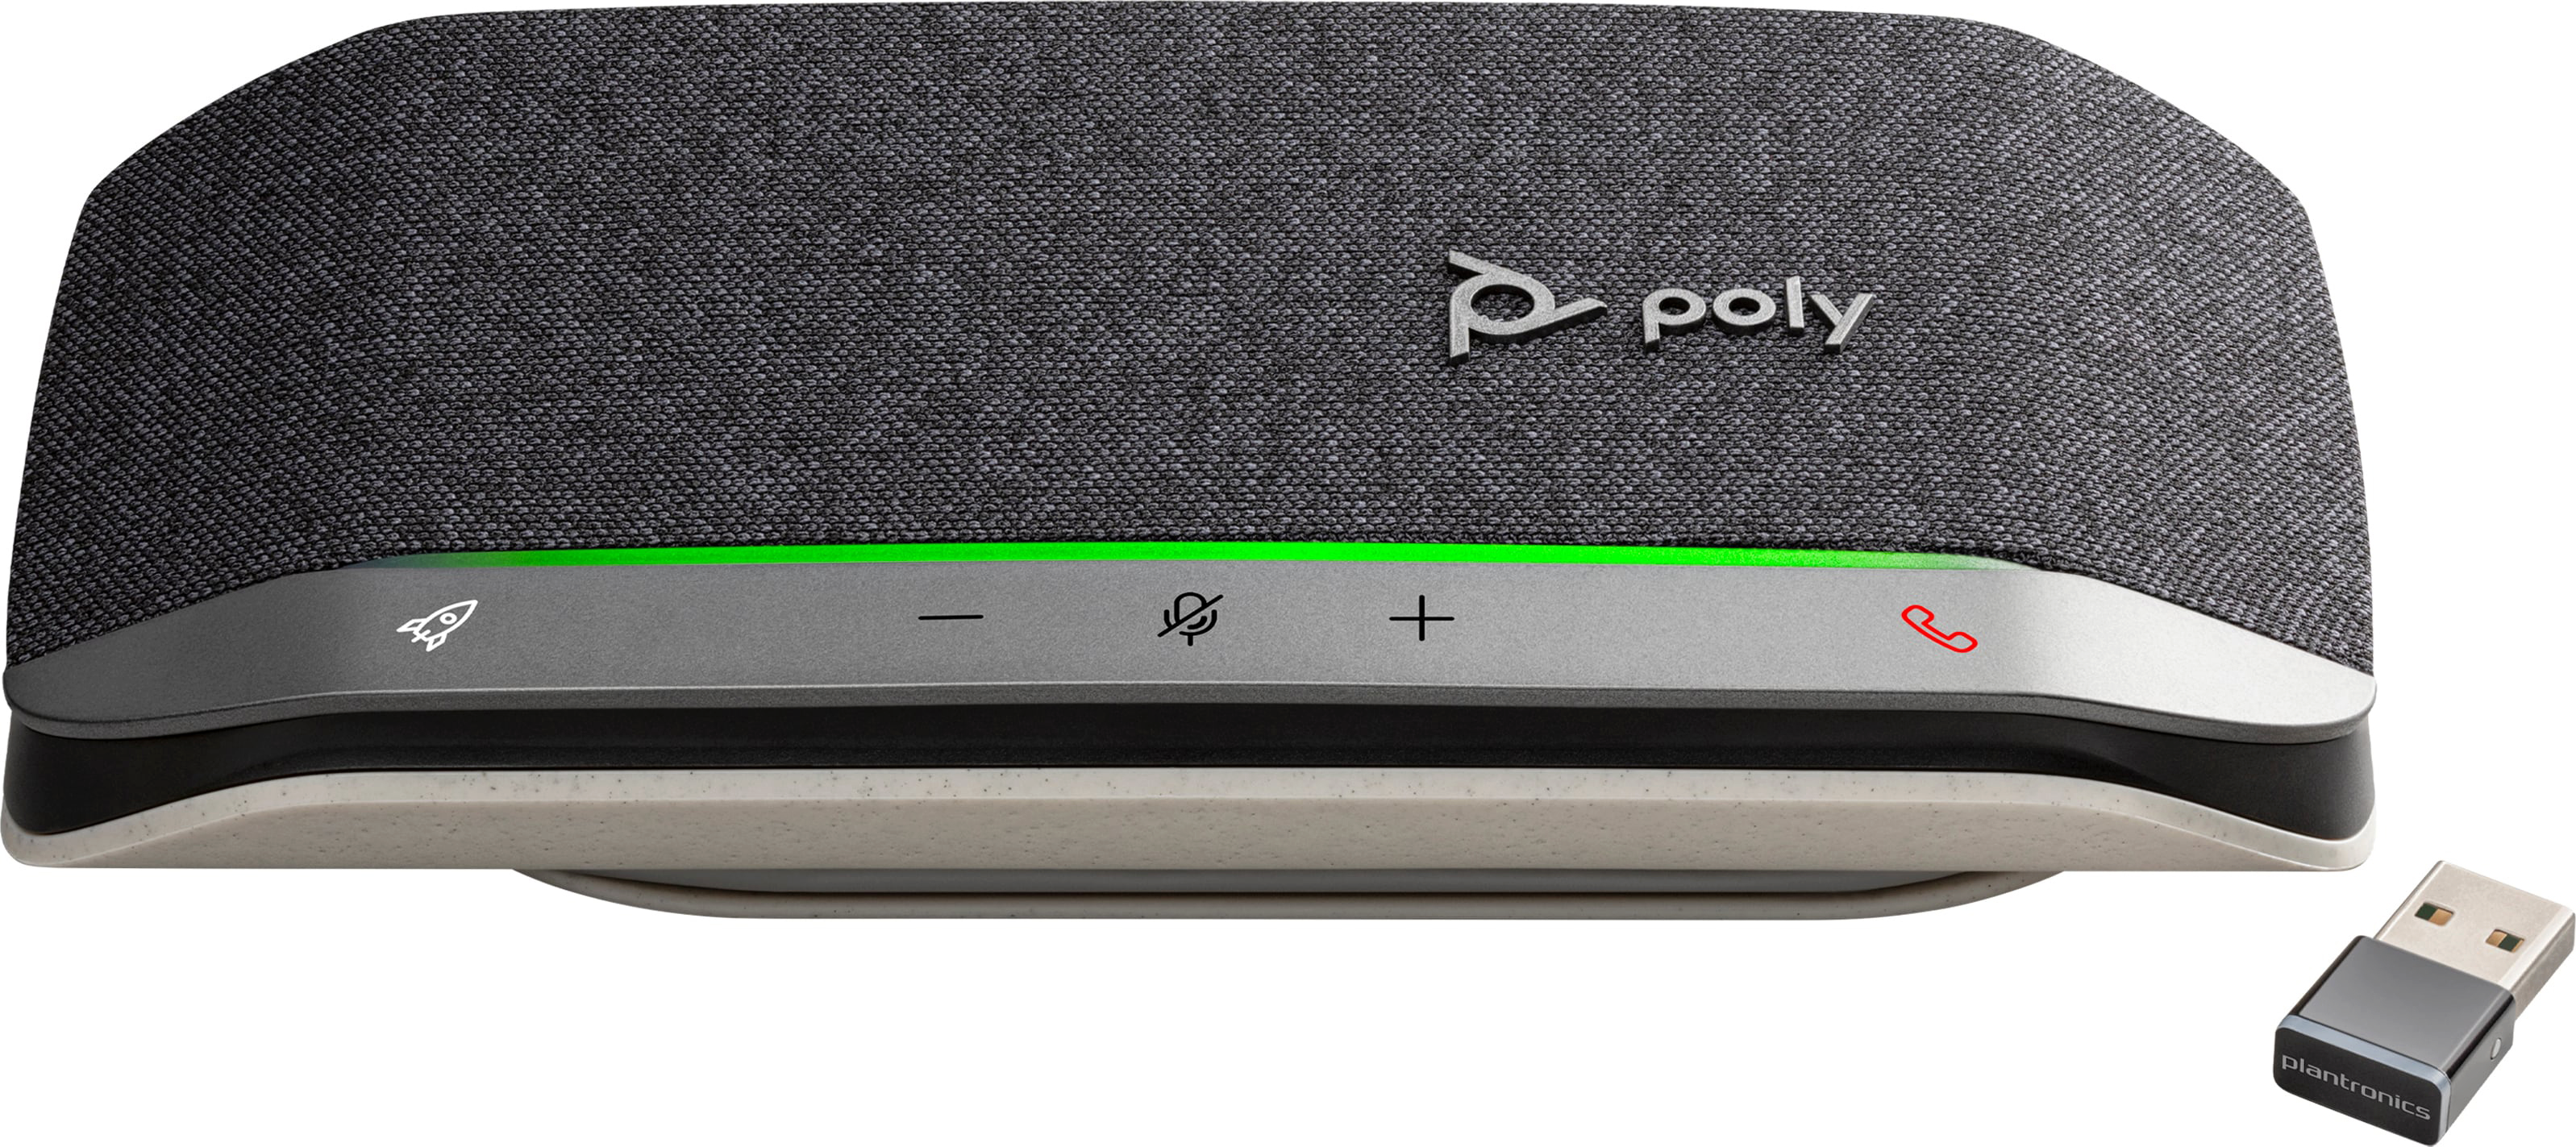 Cпікерфон Poly Sync 20+ з адаптером BT700, сертифікат Microsoft Teams, USB-A, Bluetooth, сірийфото4